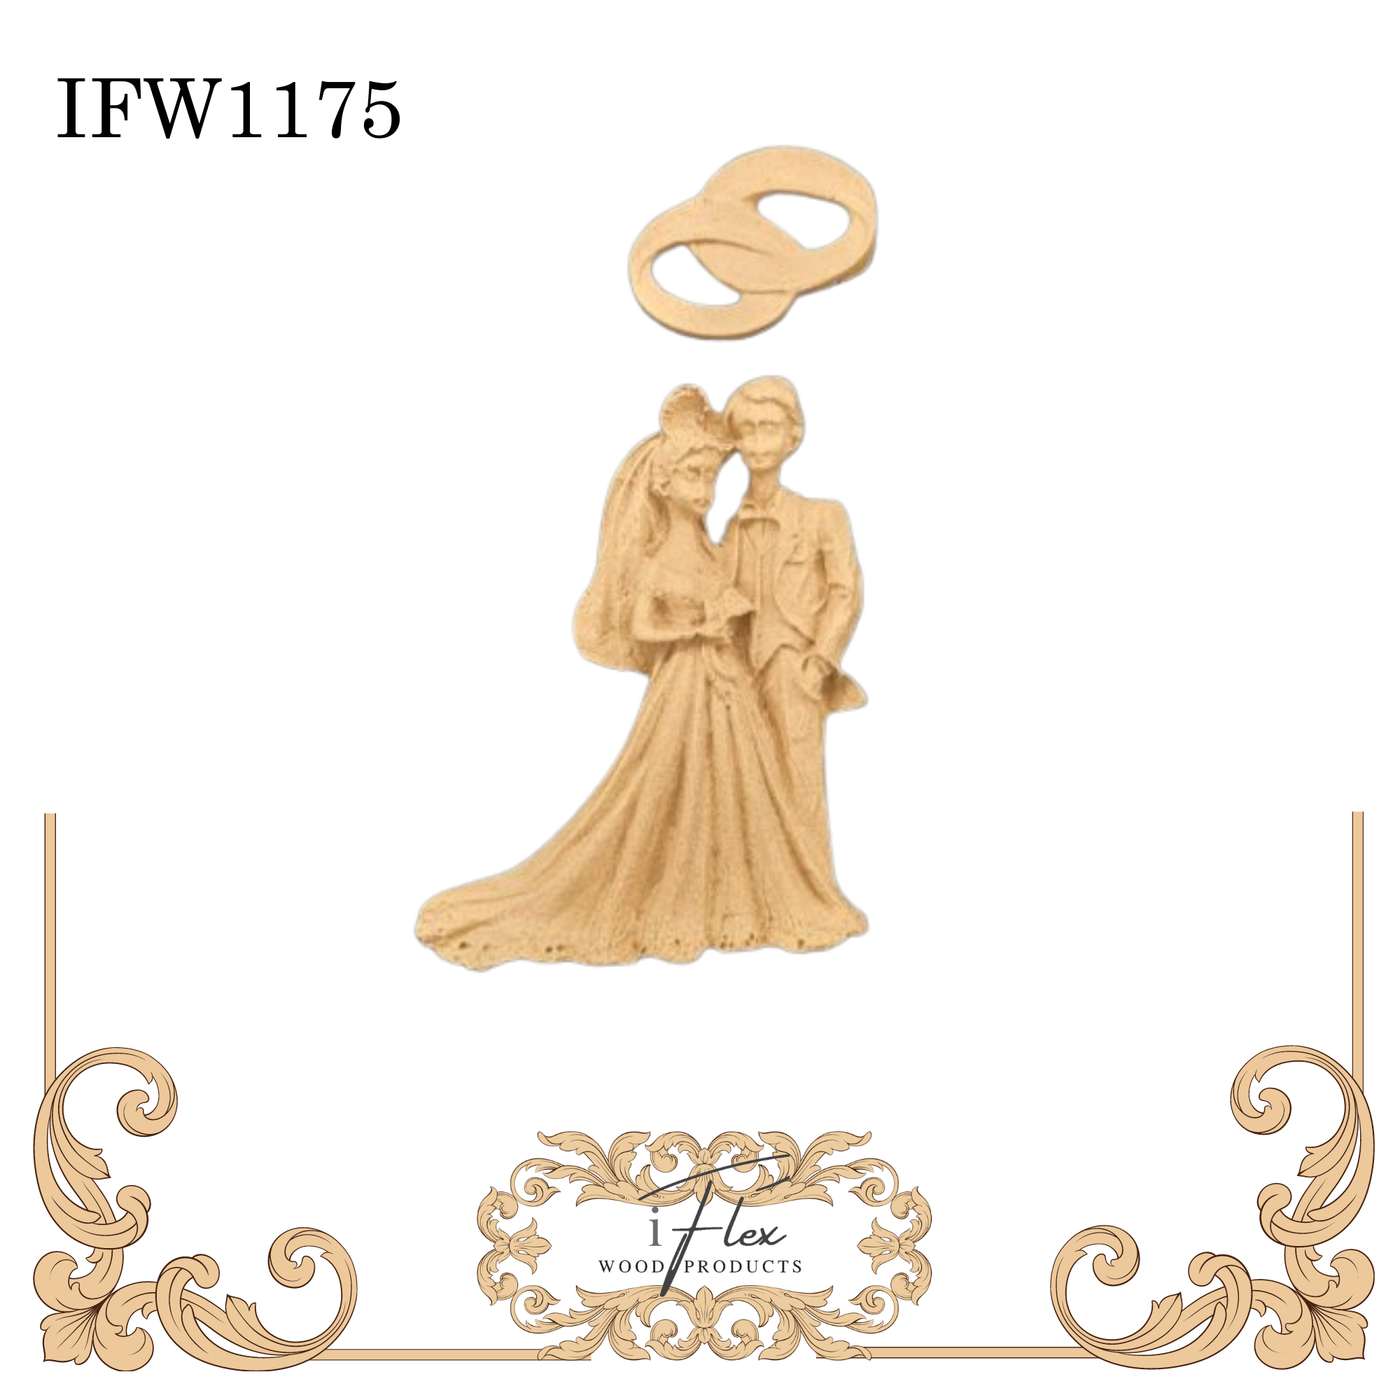 IFW 1175